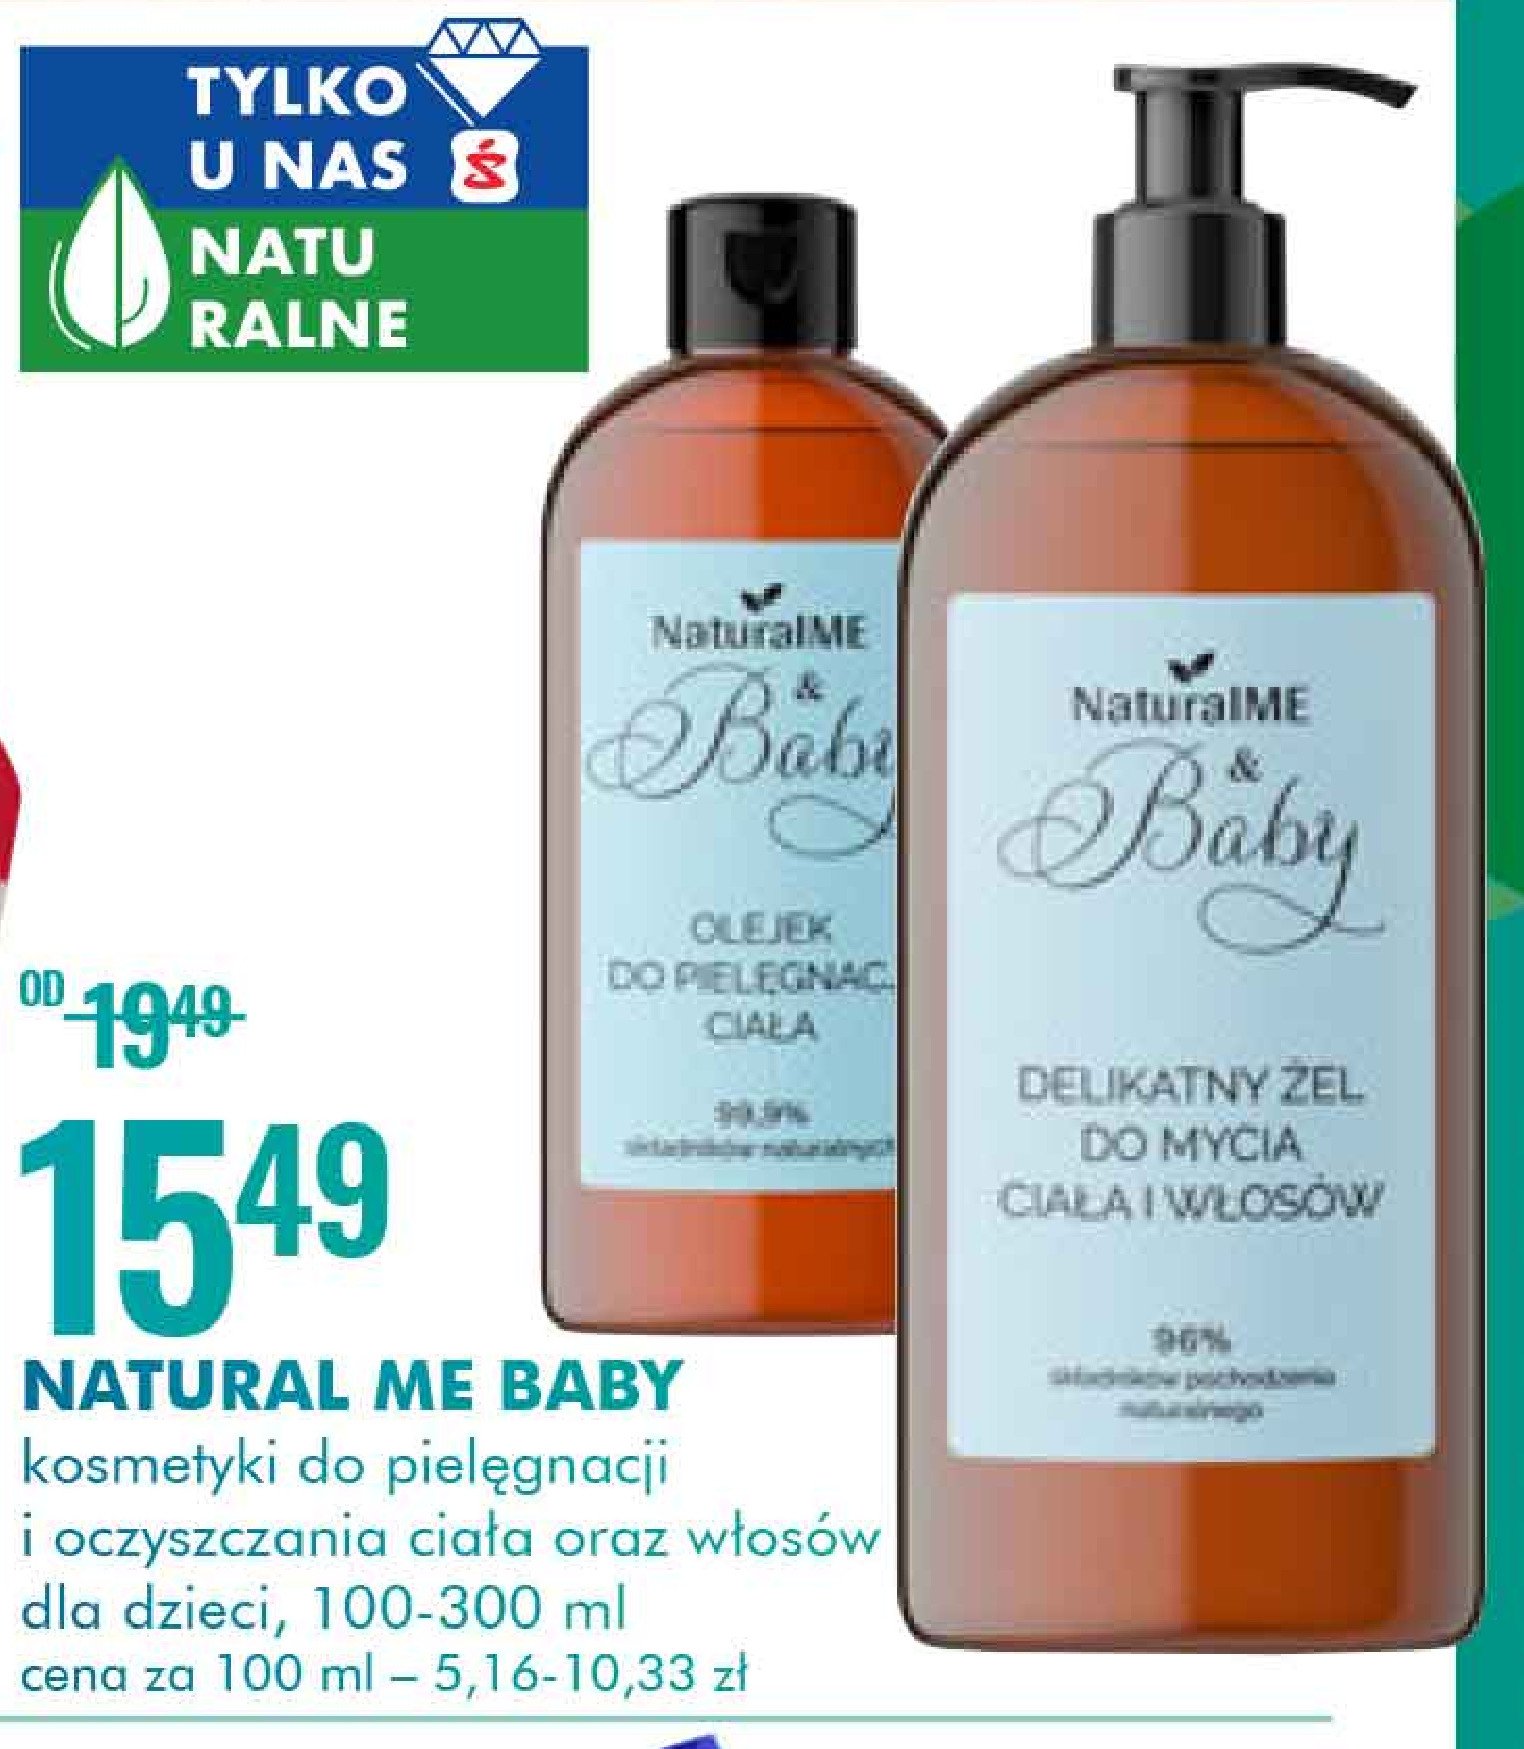 Olejek do pielęgnacji ciała Naturalme & baby promocja